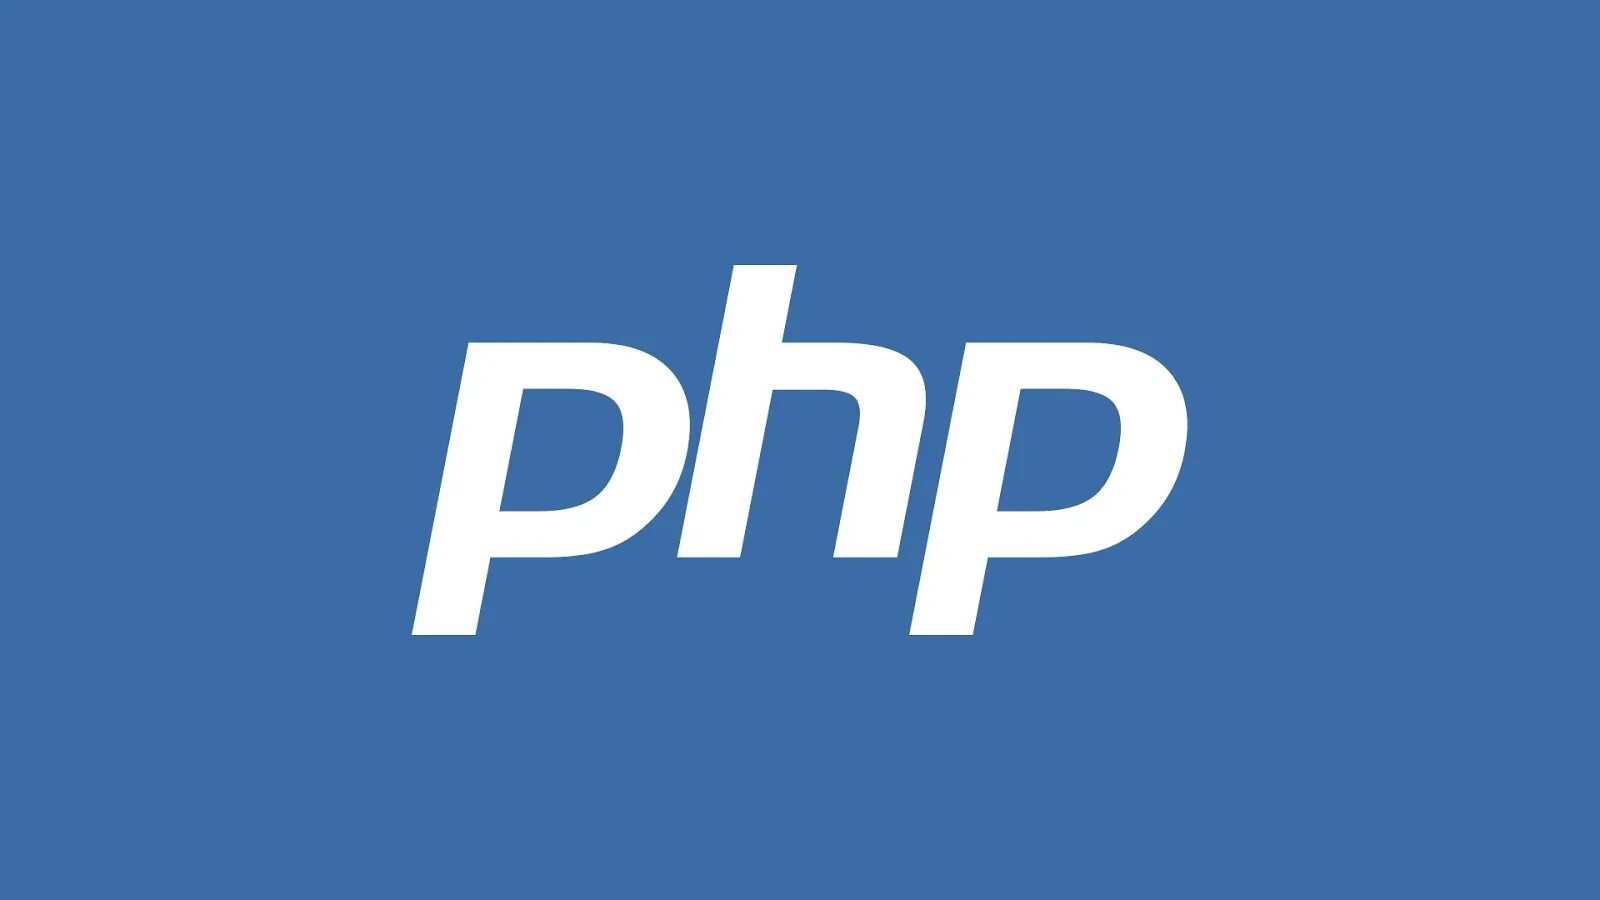 Php import. Php язык программирования логотип. Php иконка. Php картинка. Php программирование лого.